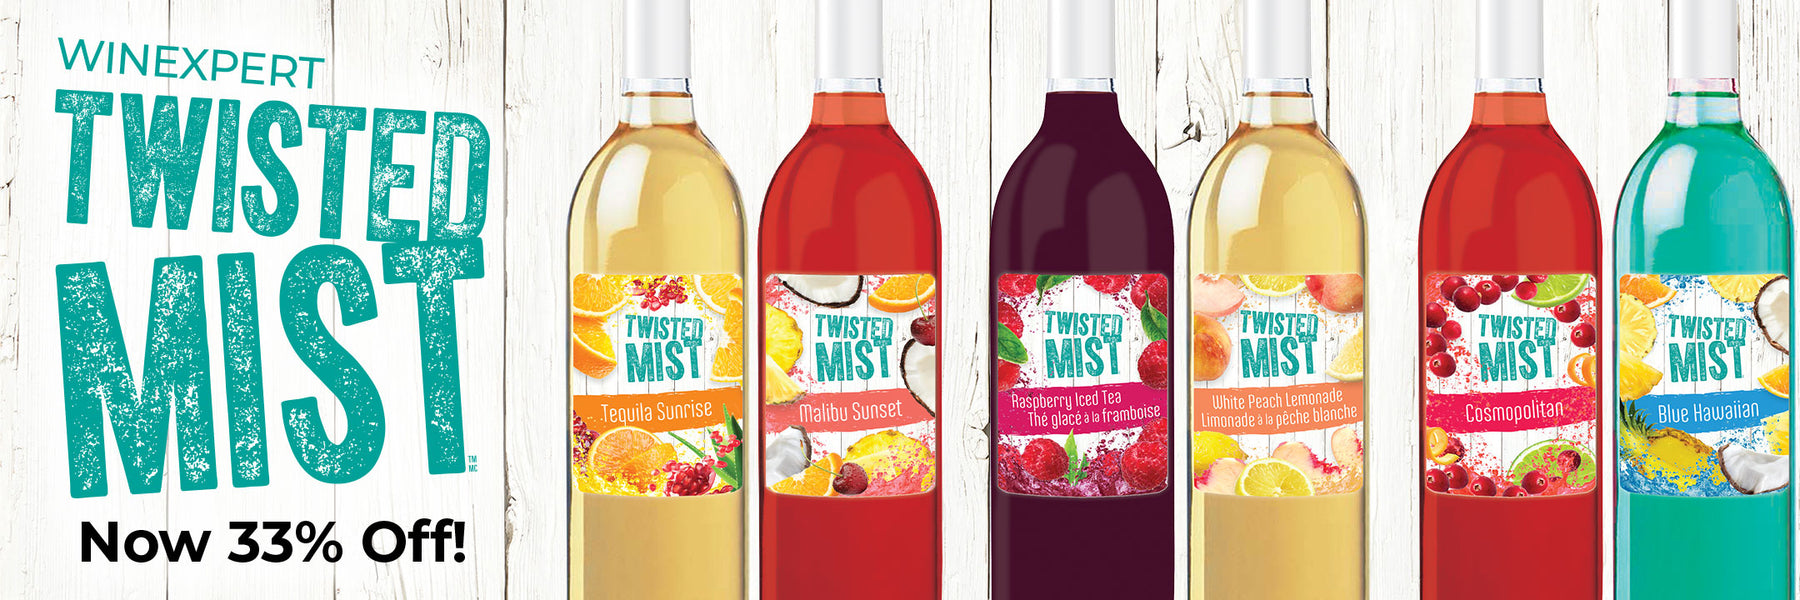 twisted mist wine kit sale